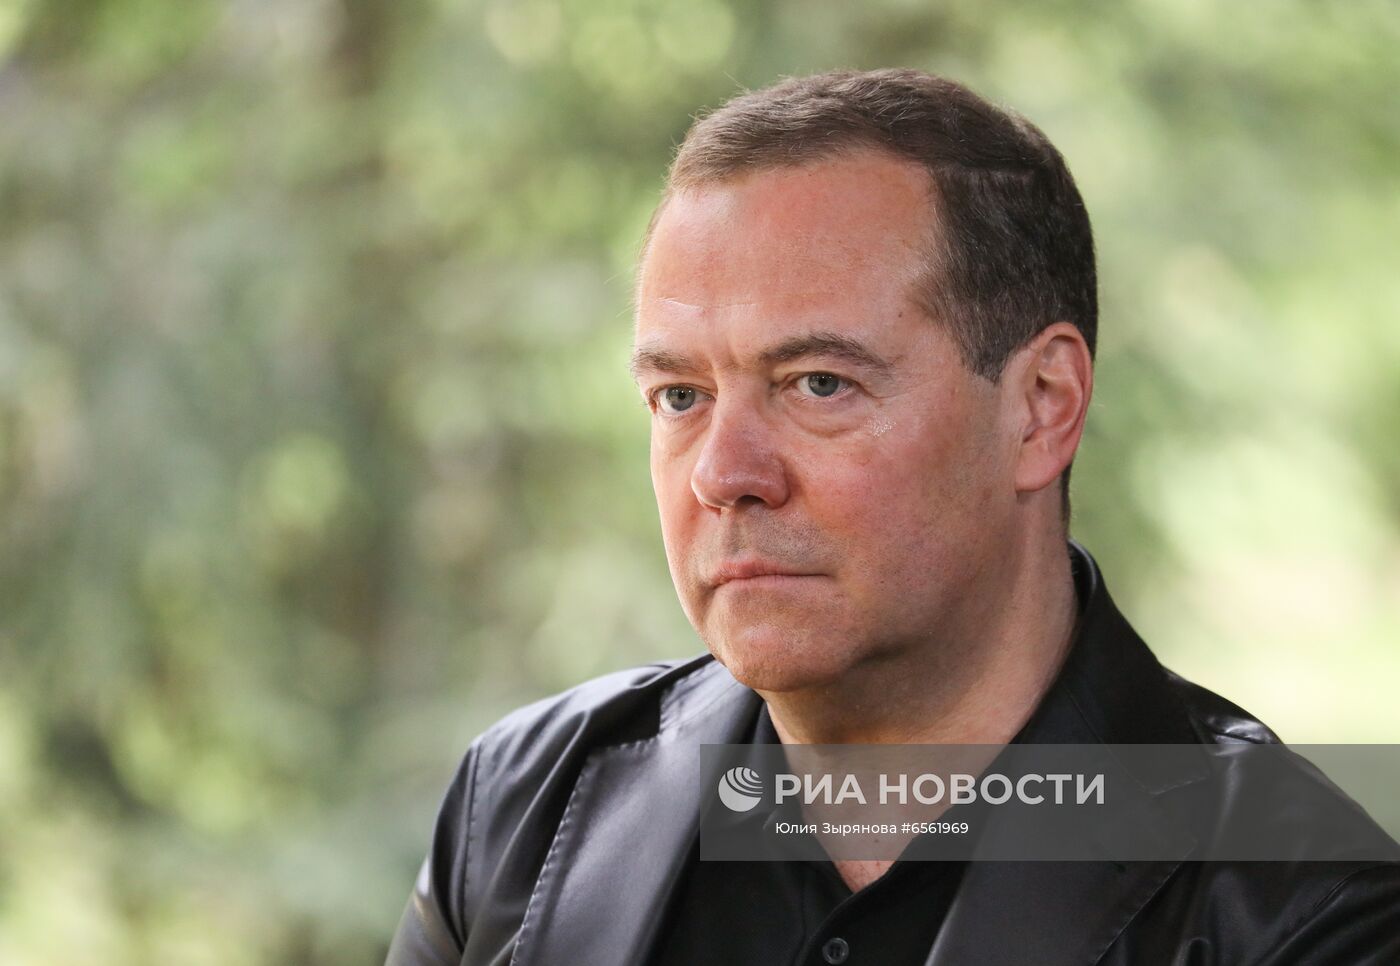 Зампред Совбеза РФ, председатель "Единой России" Д. Медведев дал интервью газете "Коммерсант"